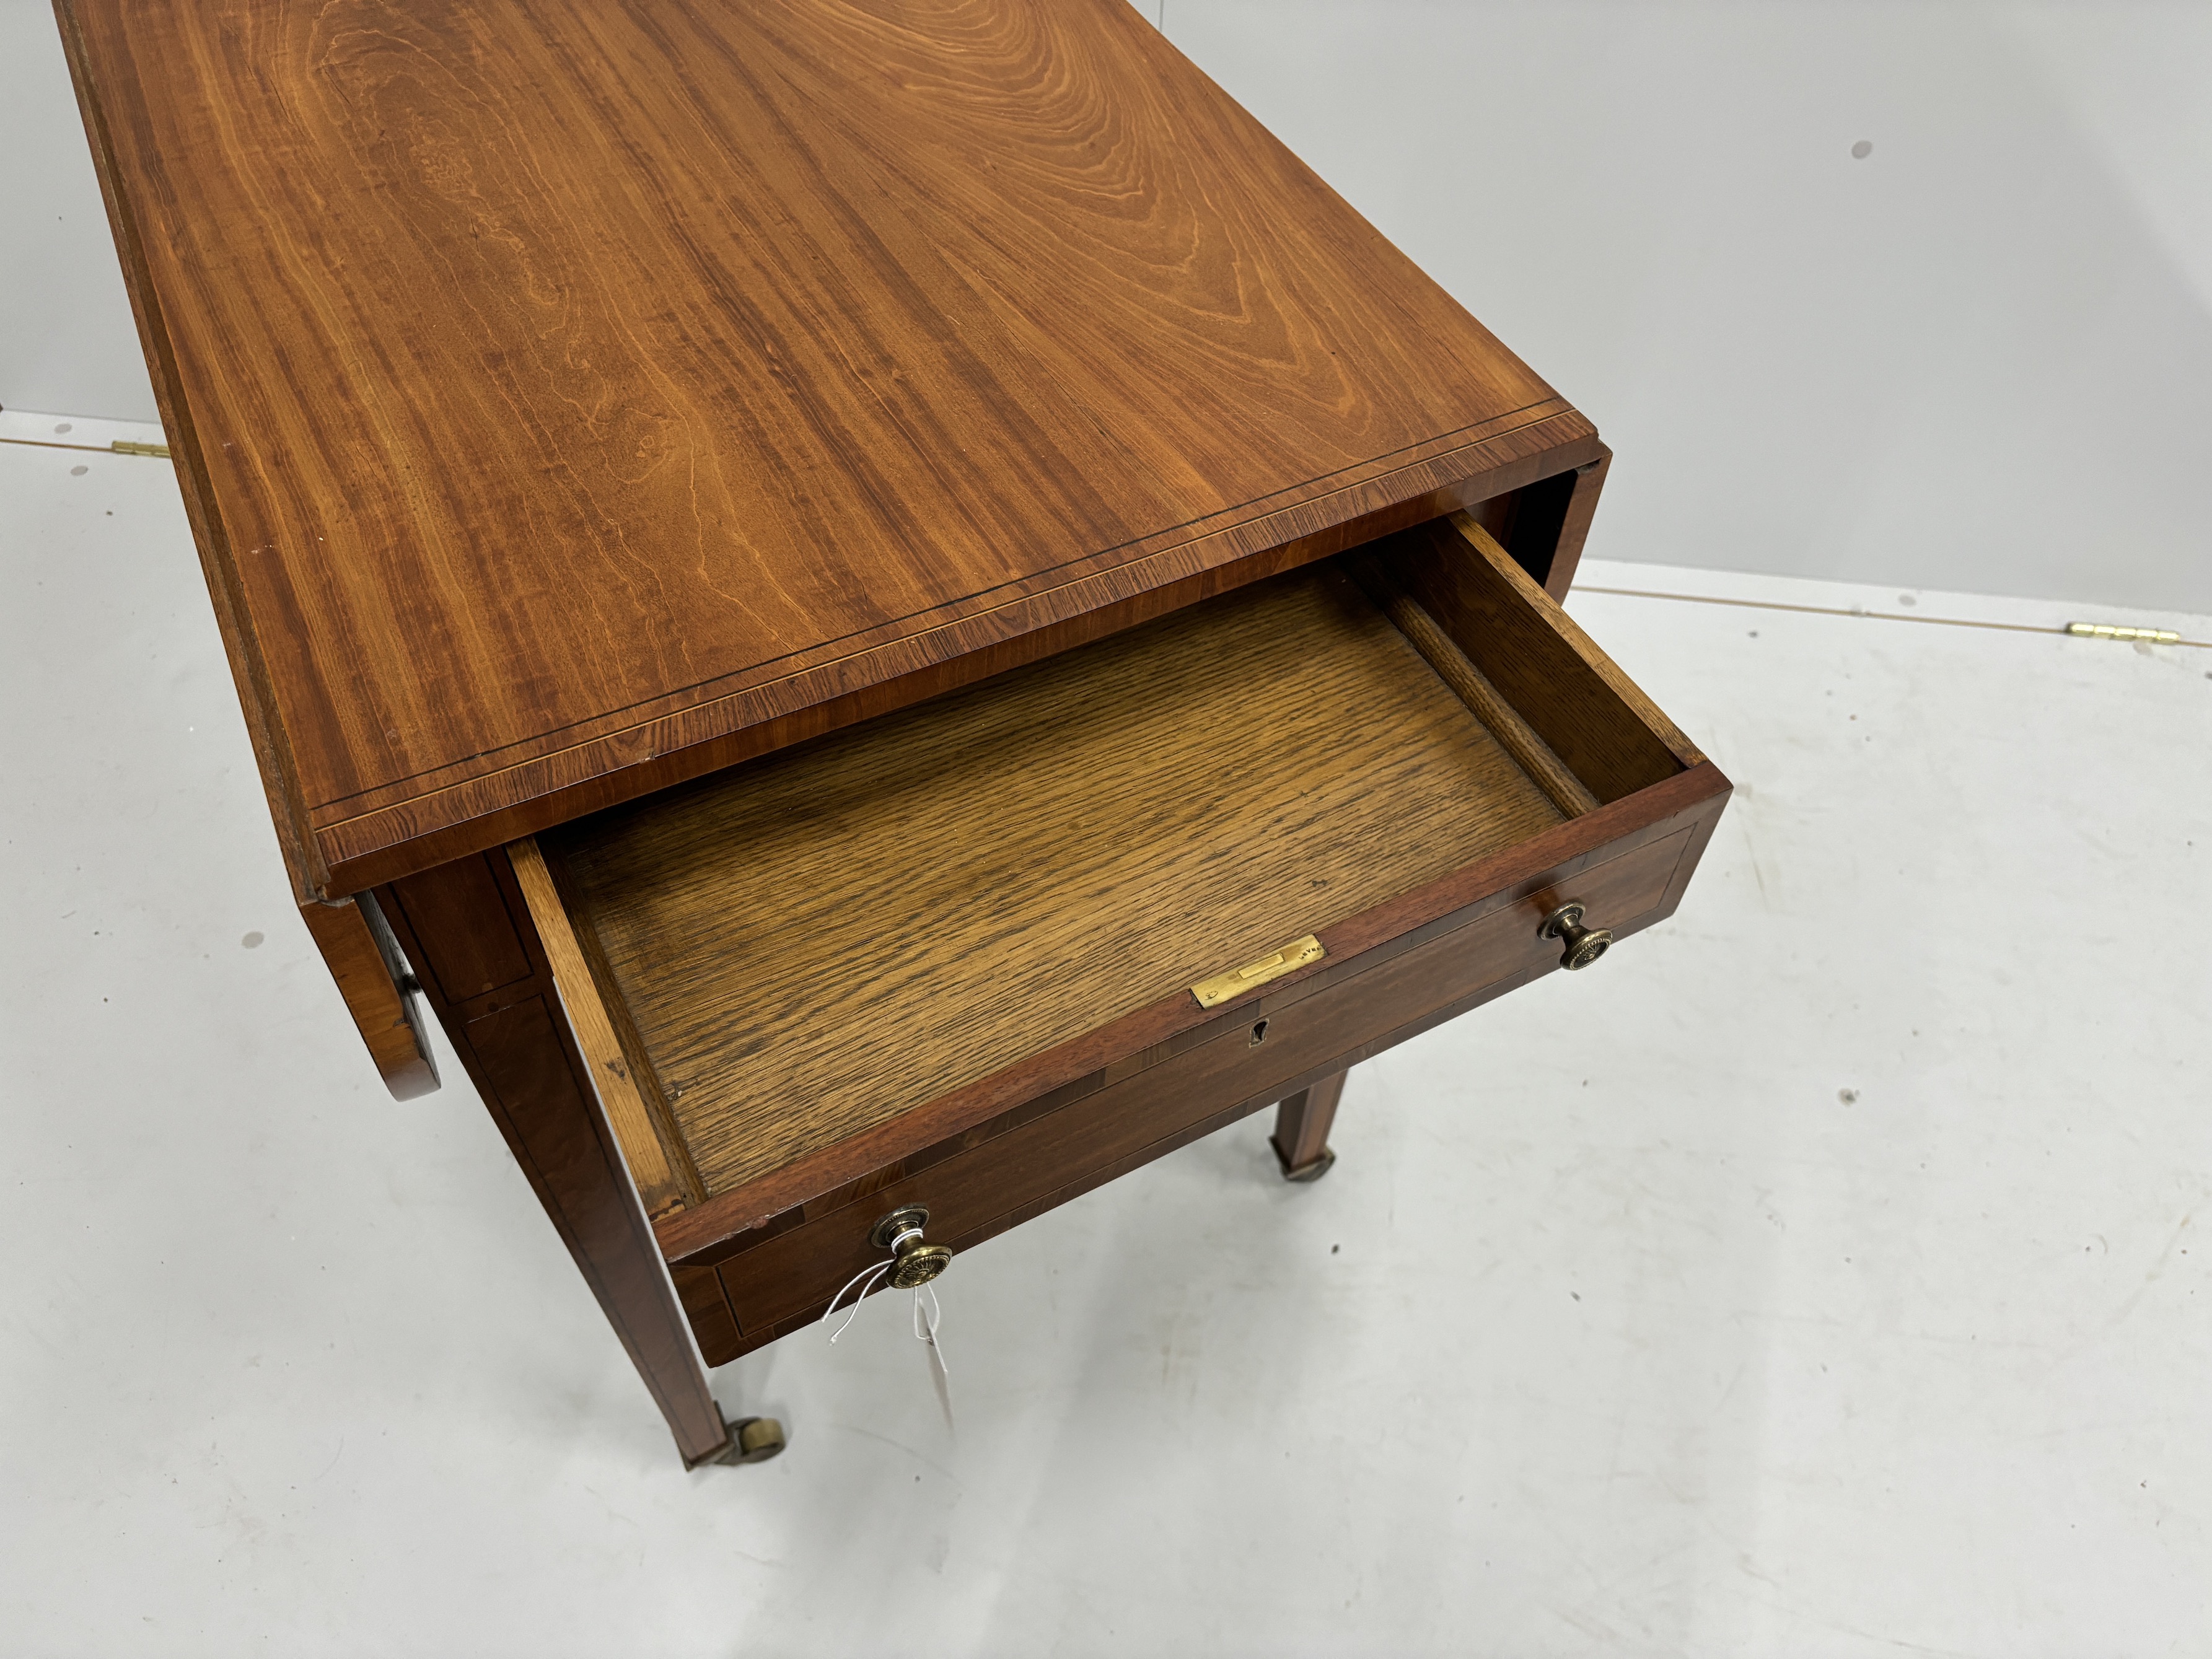 A George III coromandel banded satinwood Pembroke table, width 53cm, depth 76cm, height 73cm